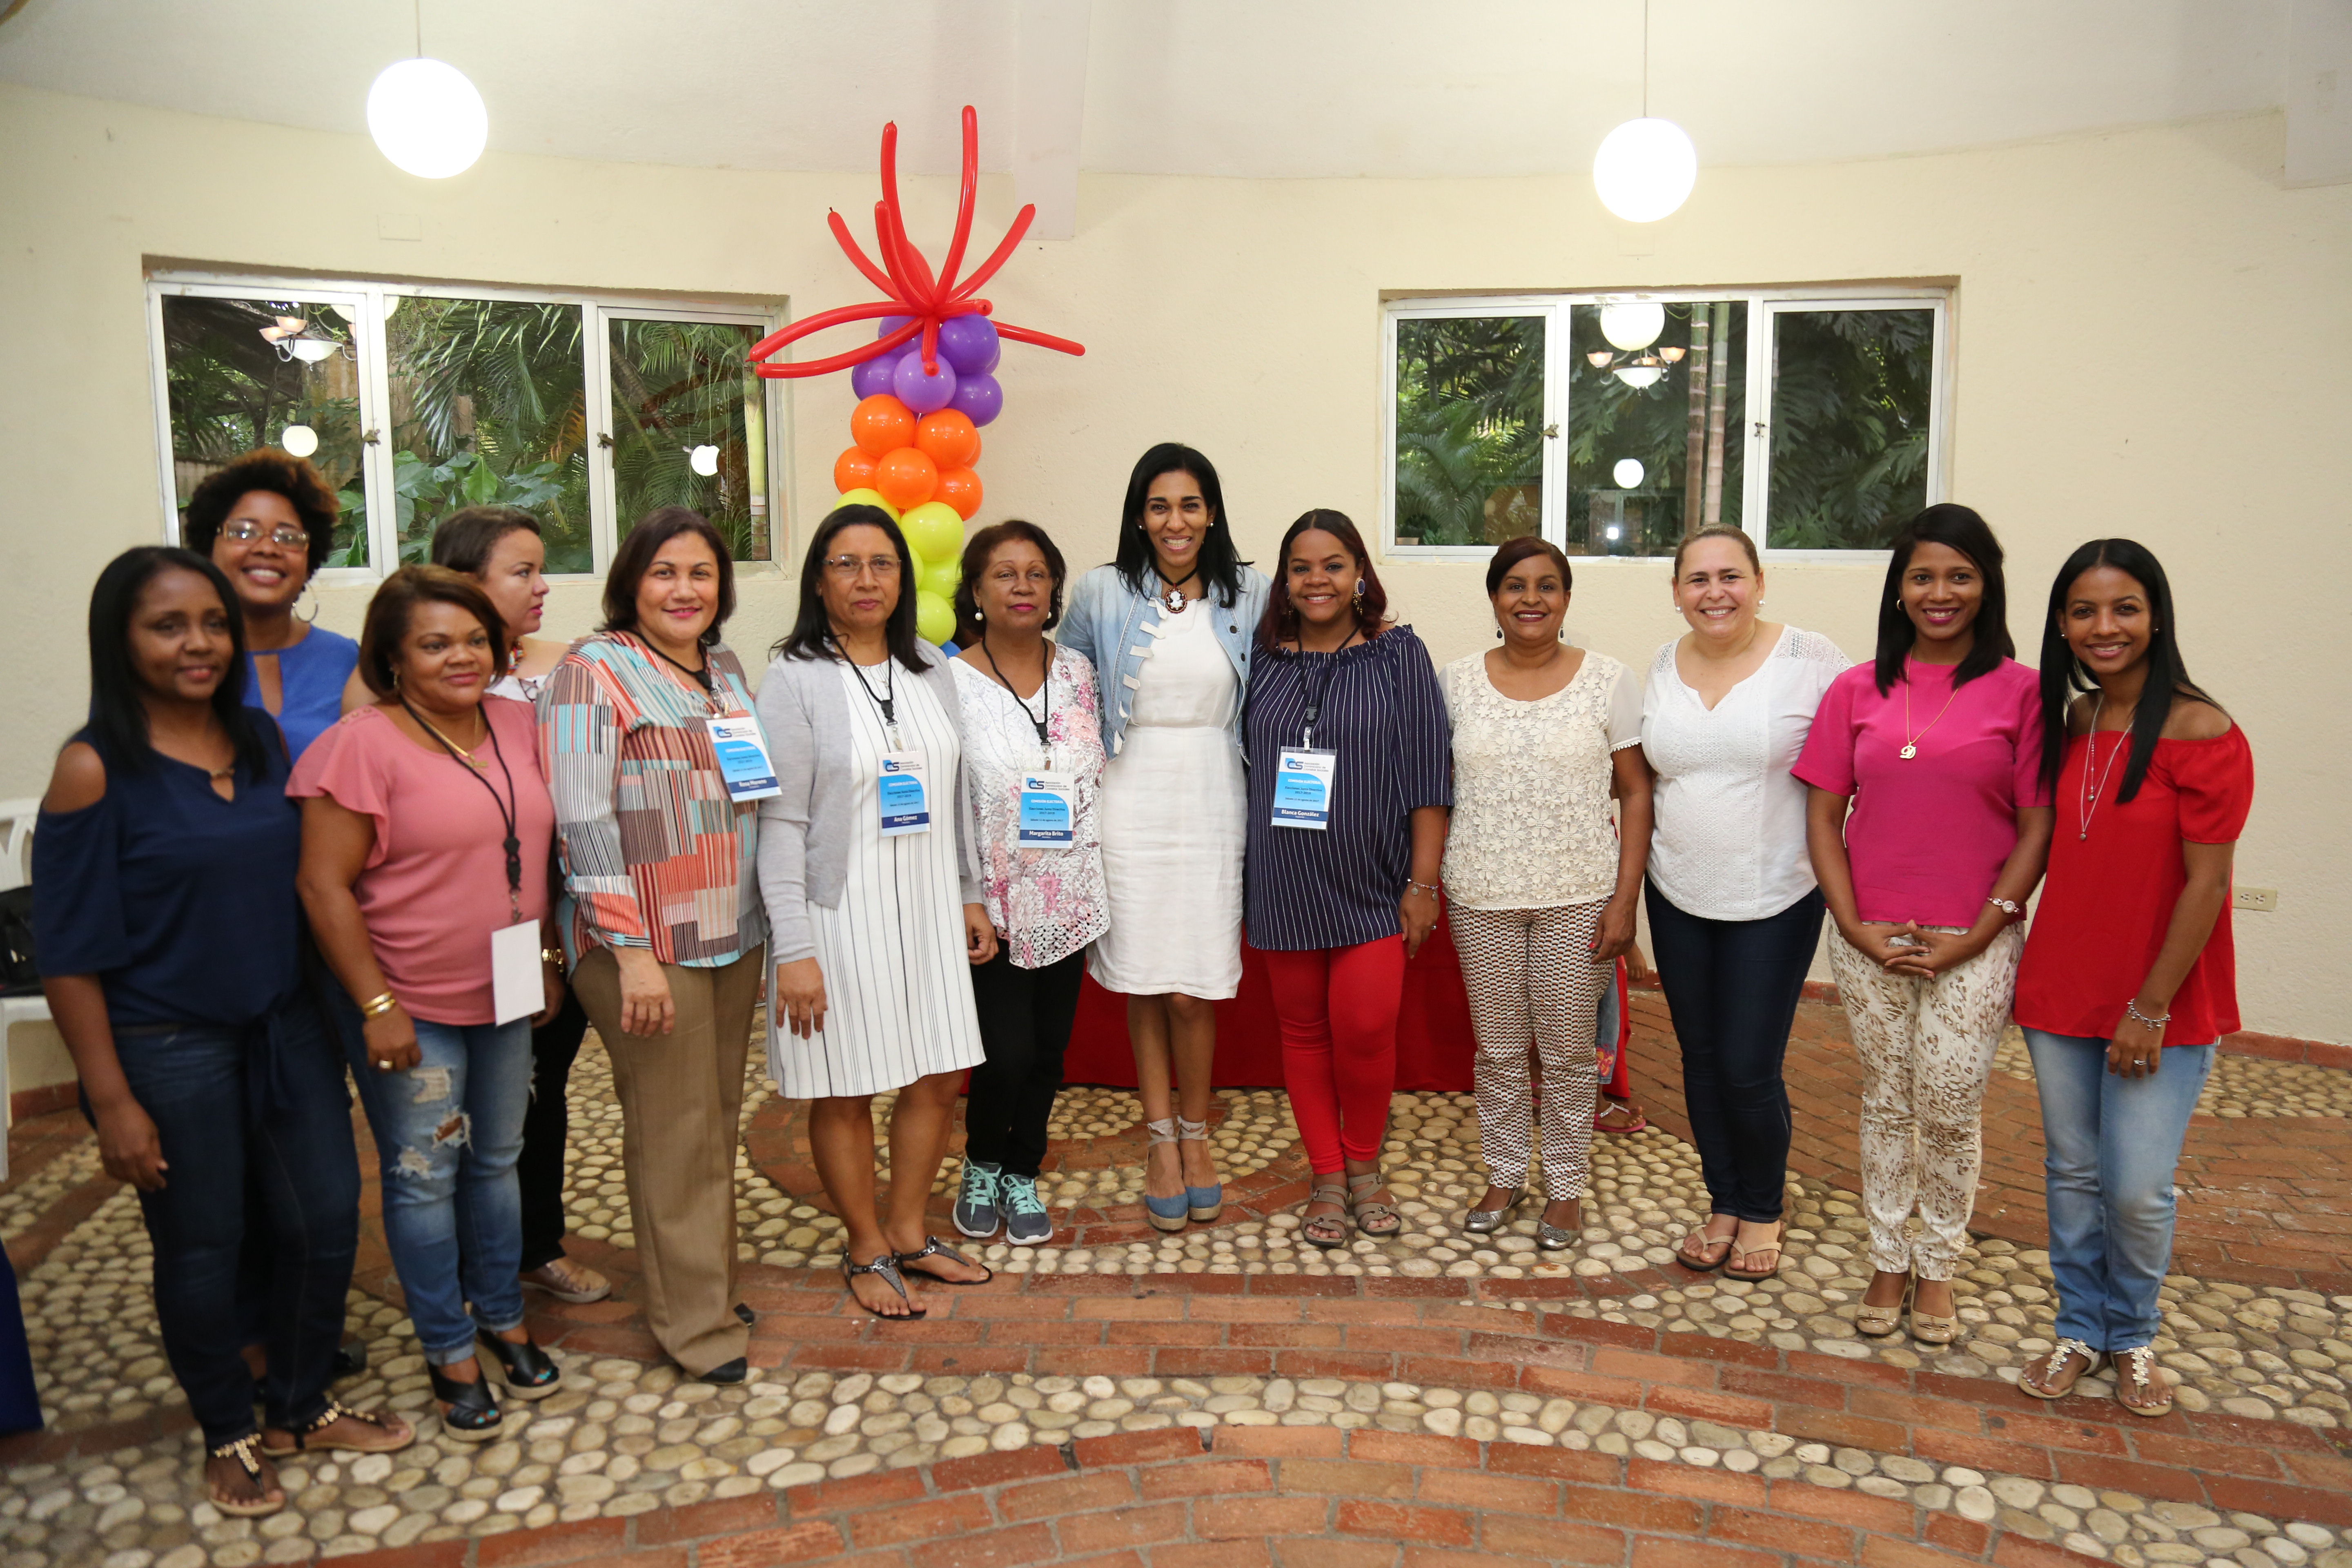  Rosa Arredondo gana la presidencia de la Asociación de Cronistas Sociales